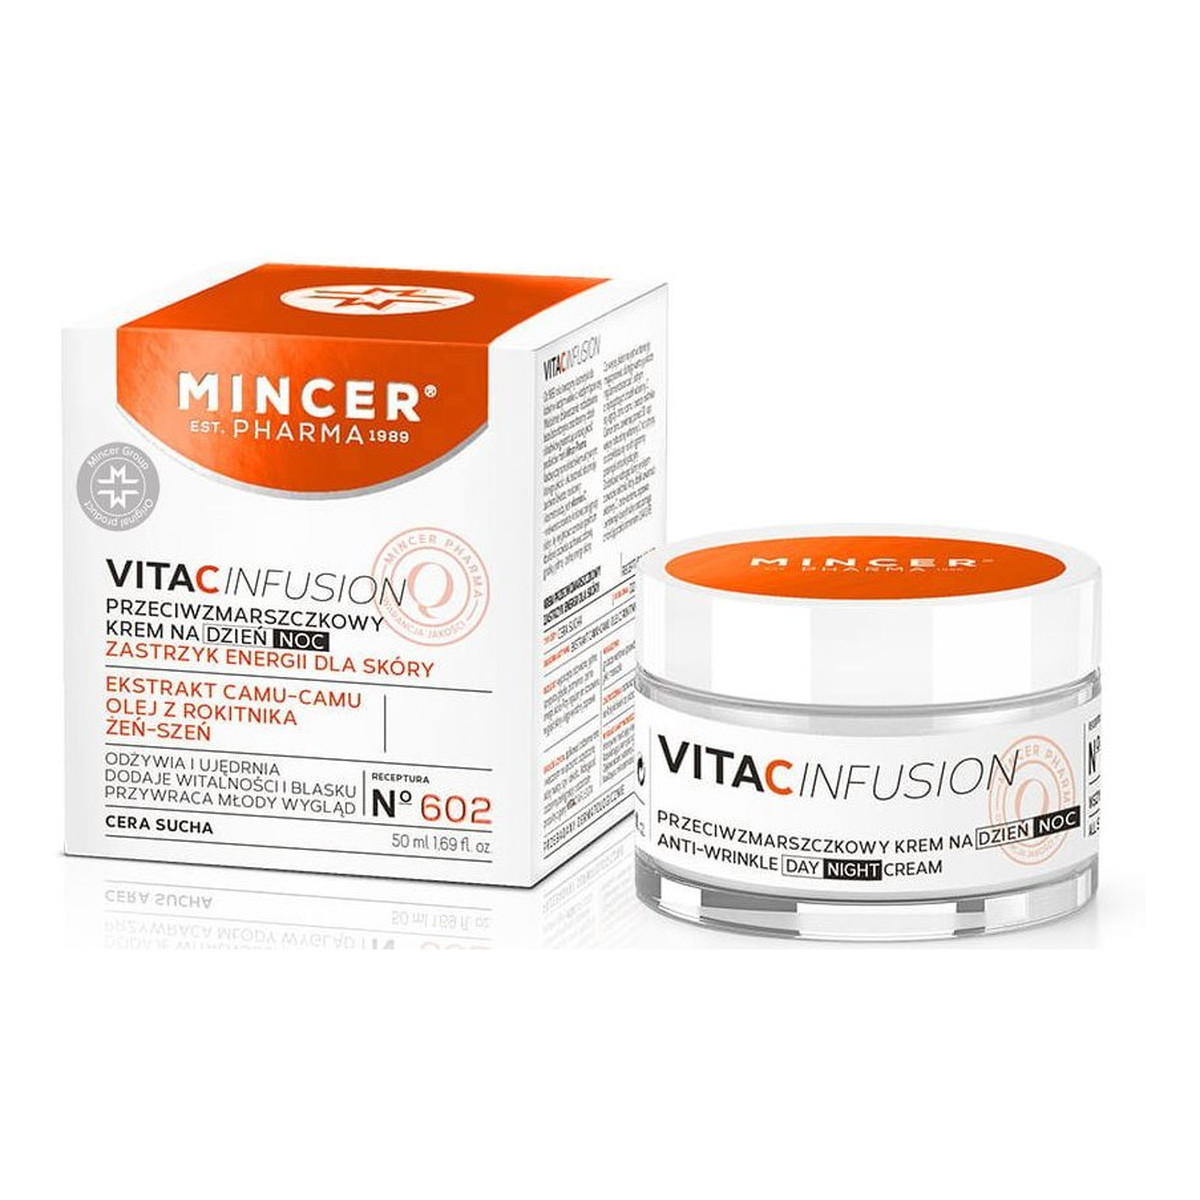 Mincer Pharma Vita C Infusion Krem Przeciwzmarszczowy No 602 + Nawilżający No 601 + Płyn micelarny No 611